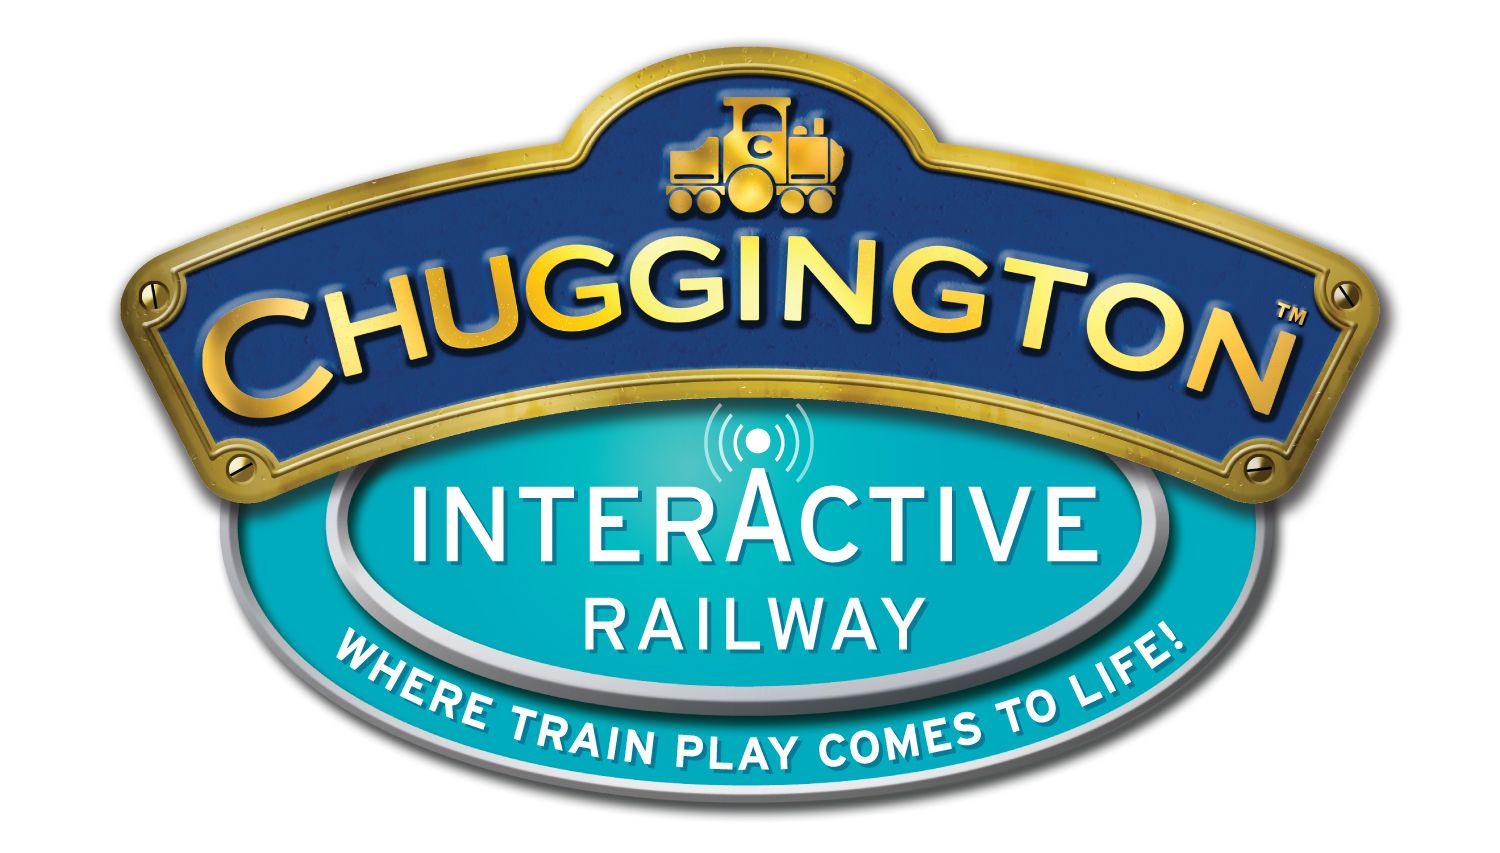 Chuggington Logo - Chuggington Interactive Railway | Chuggington Wiki | FANDOM powered ...